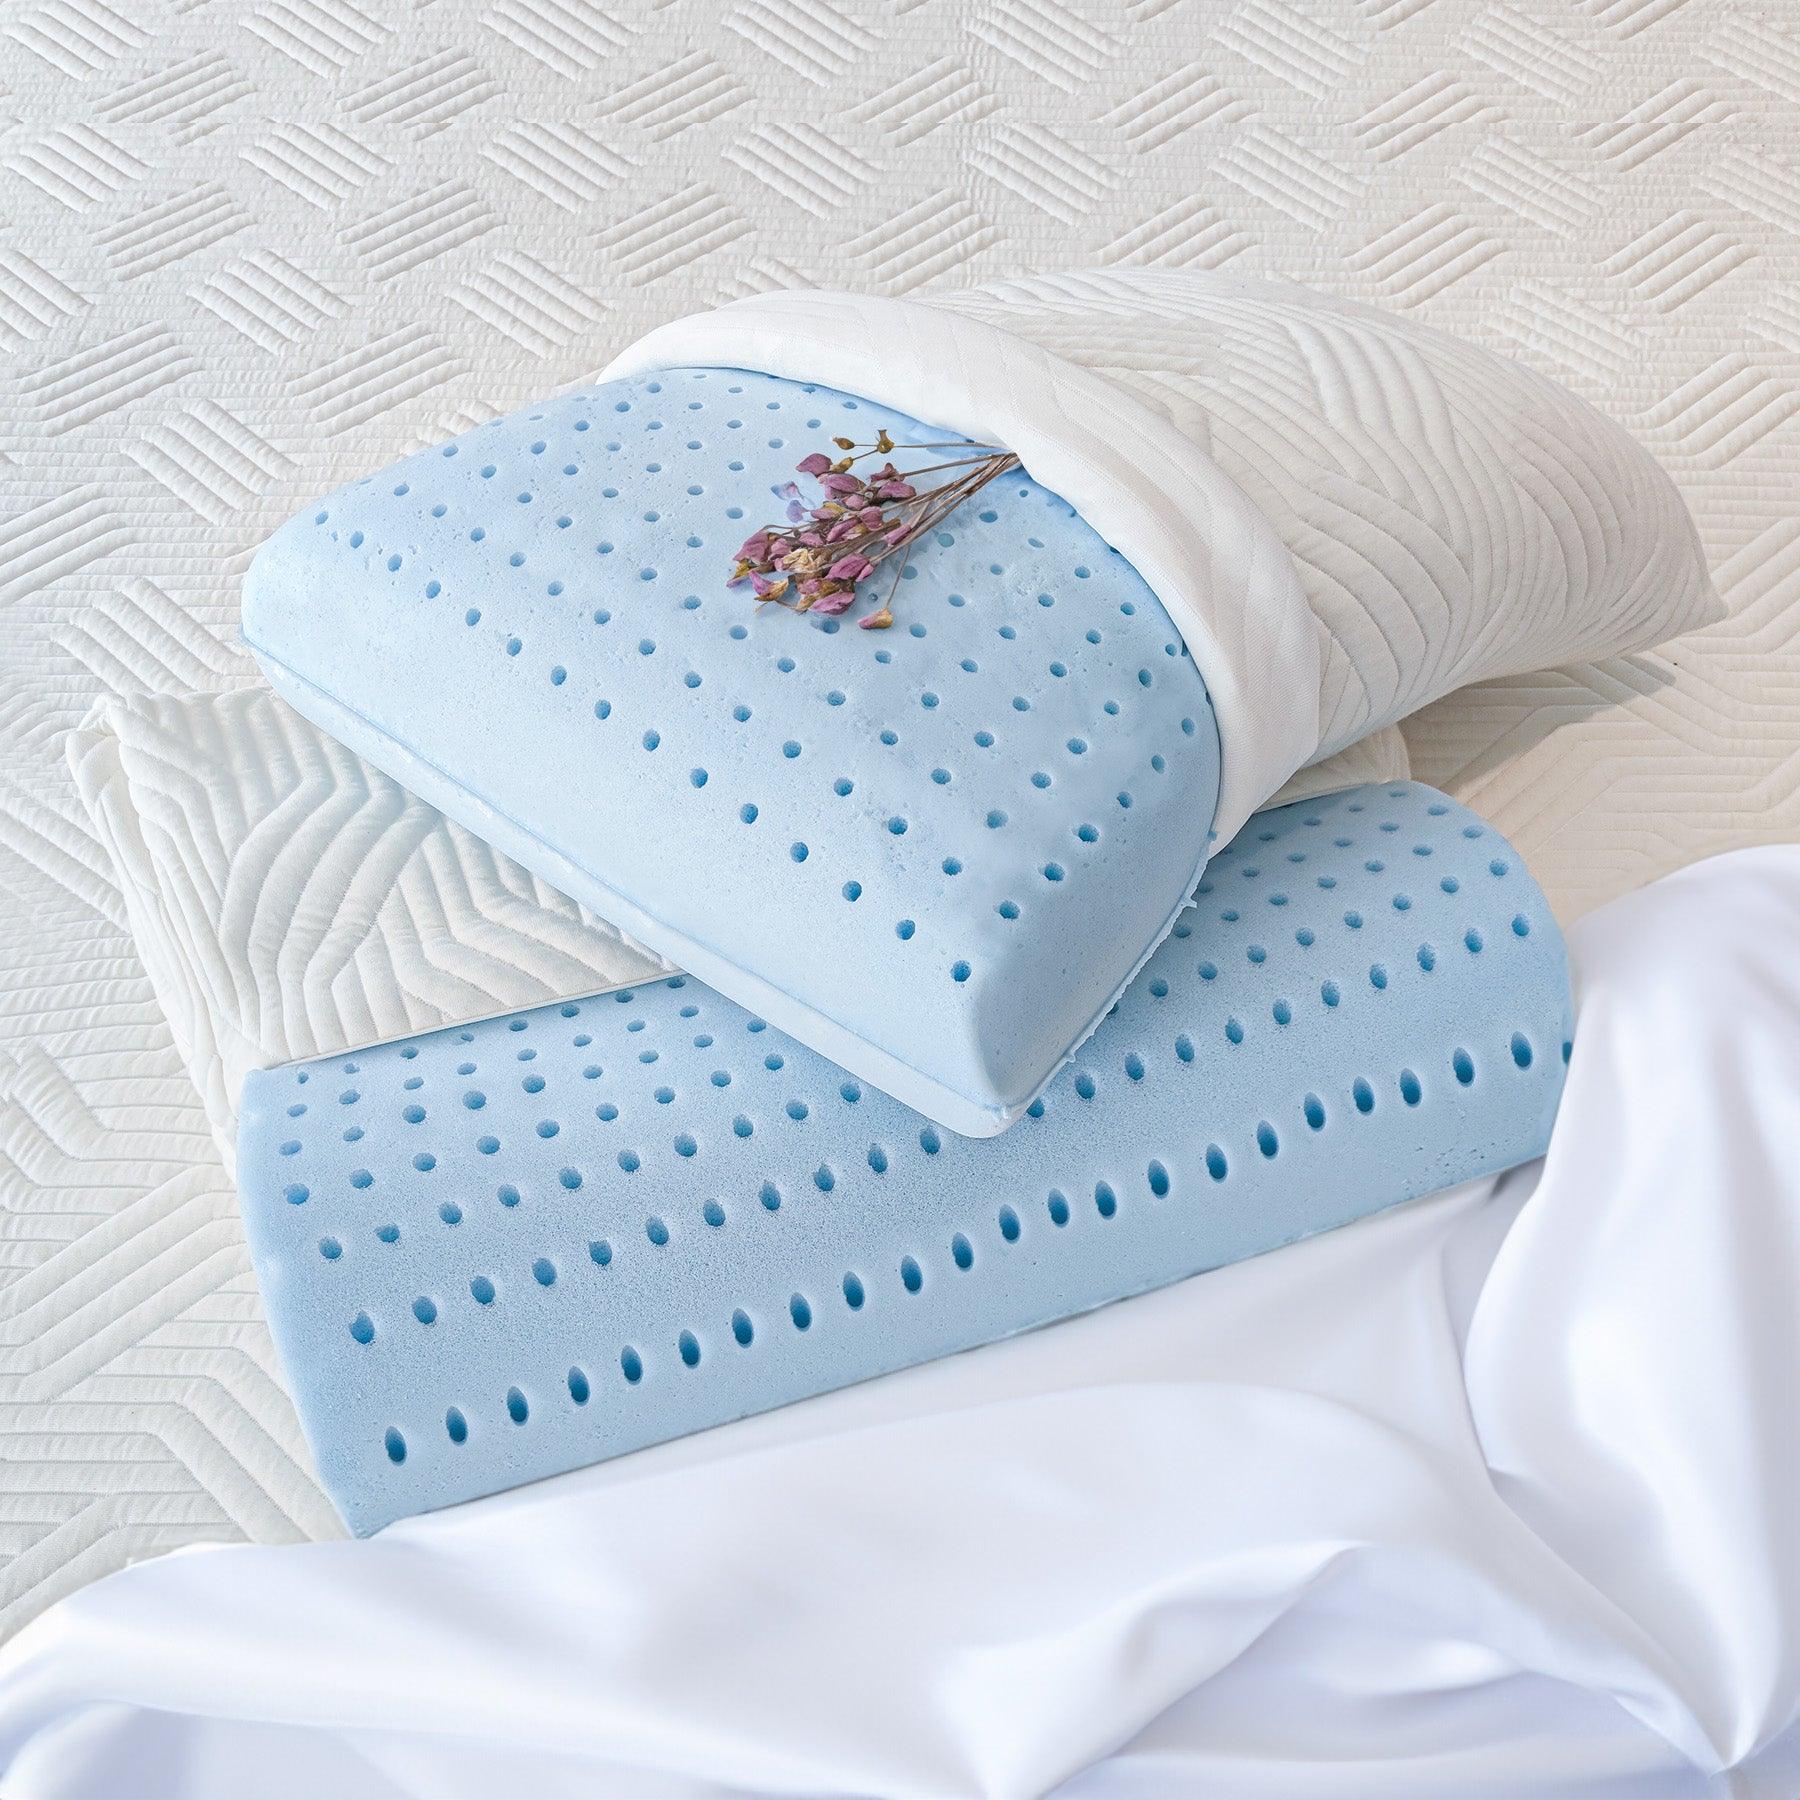 Dettaglio del cuscino cervicale Donizetti in Watergel, progettato per migliorare la postura durante il sonno e garantire il massimo comfort